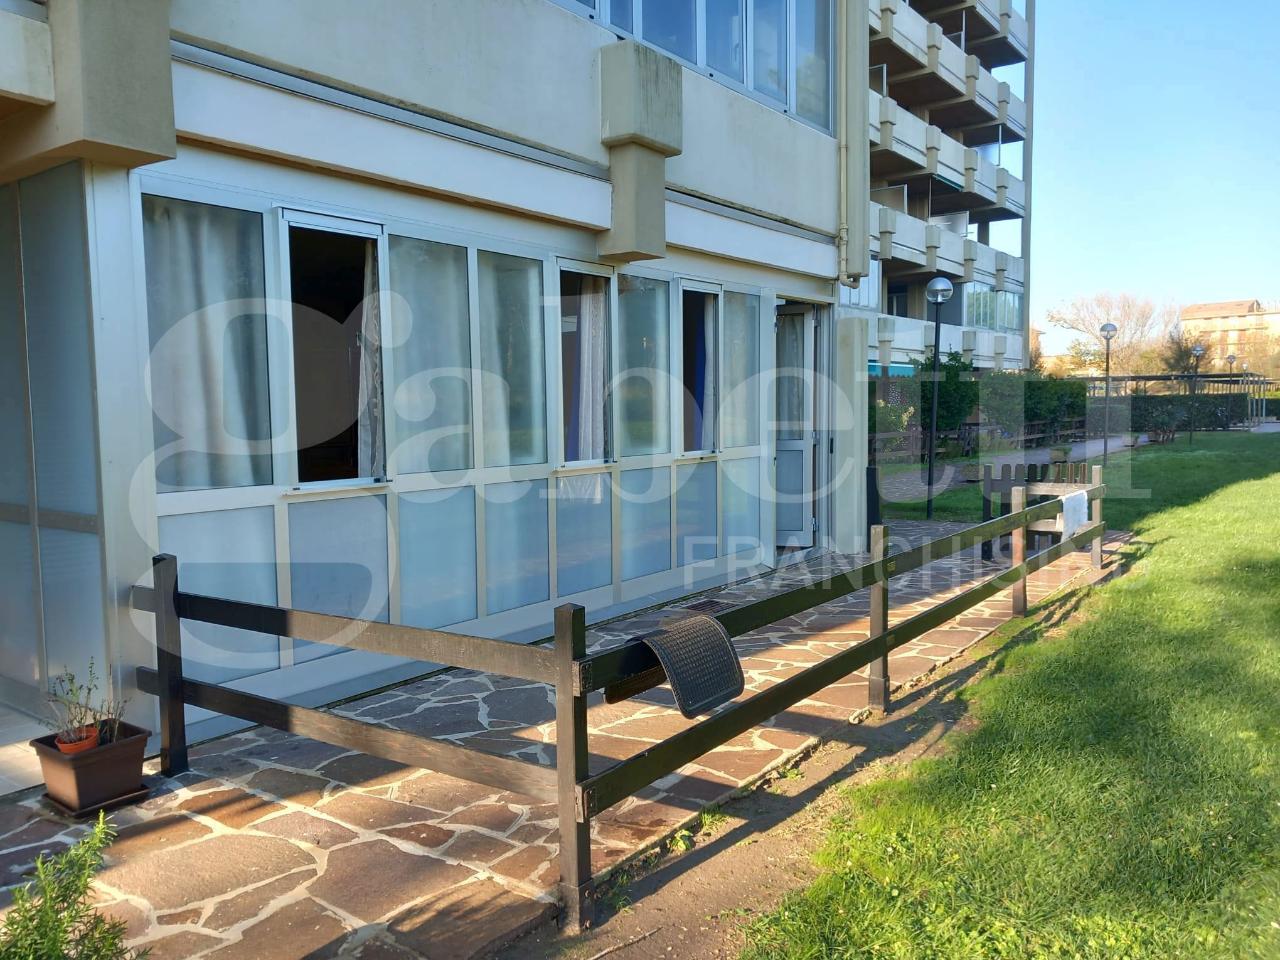 Appartamento in vendita a Chioggia